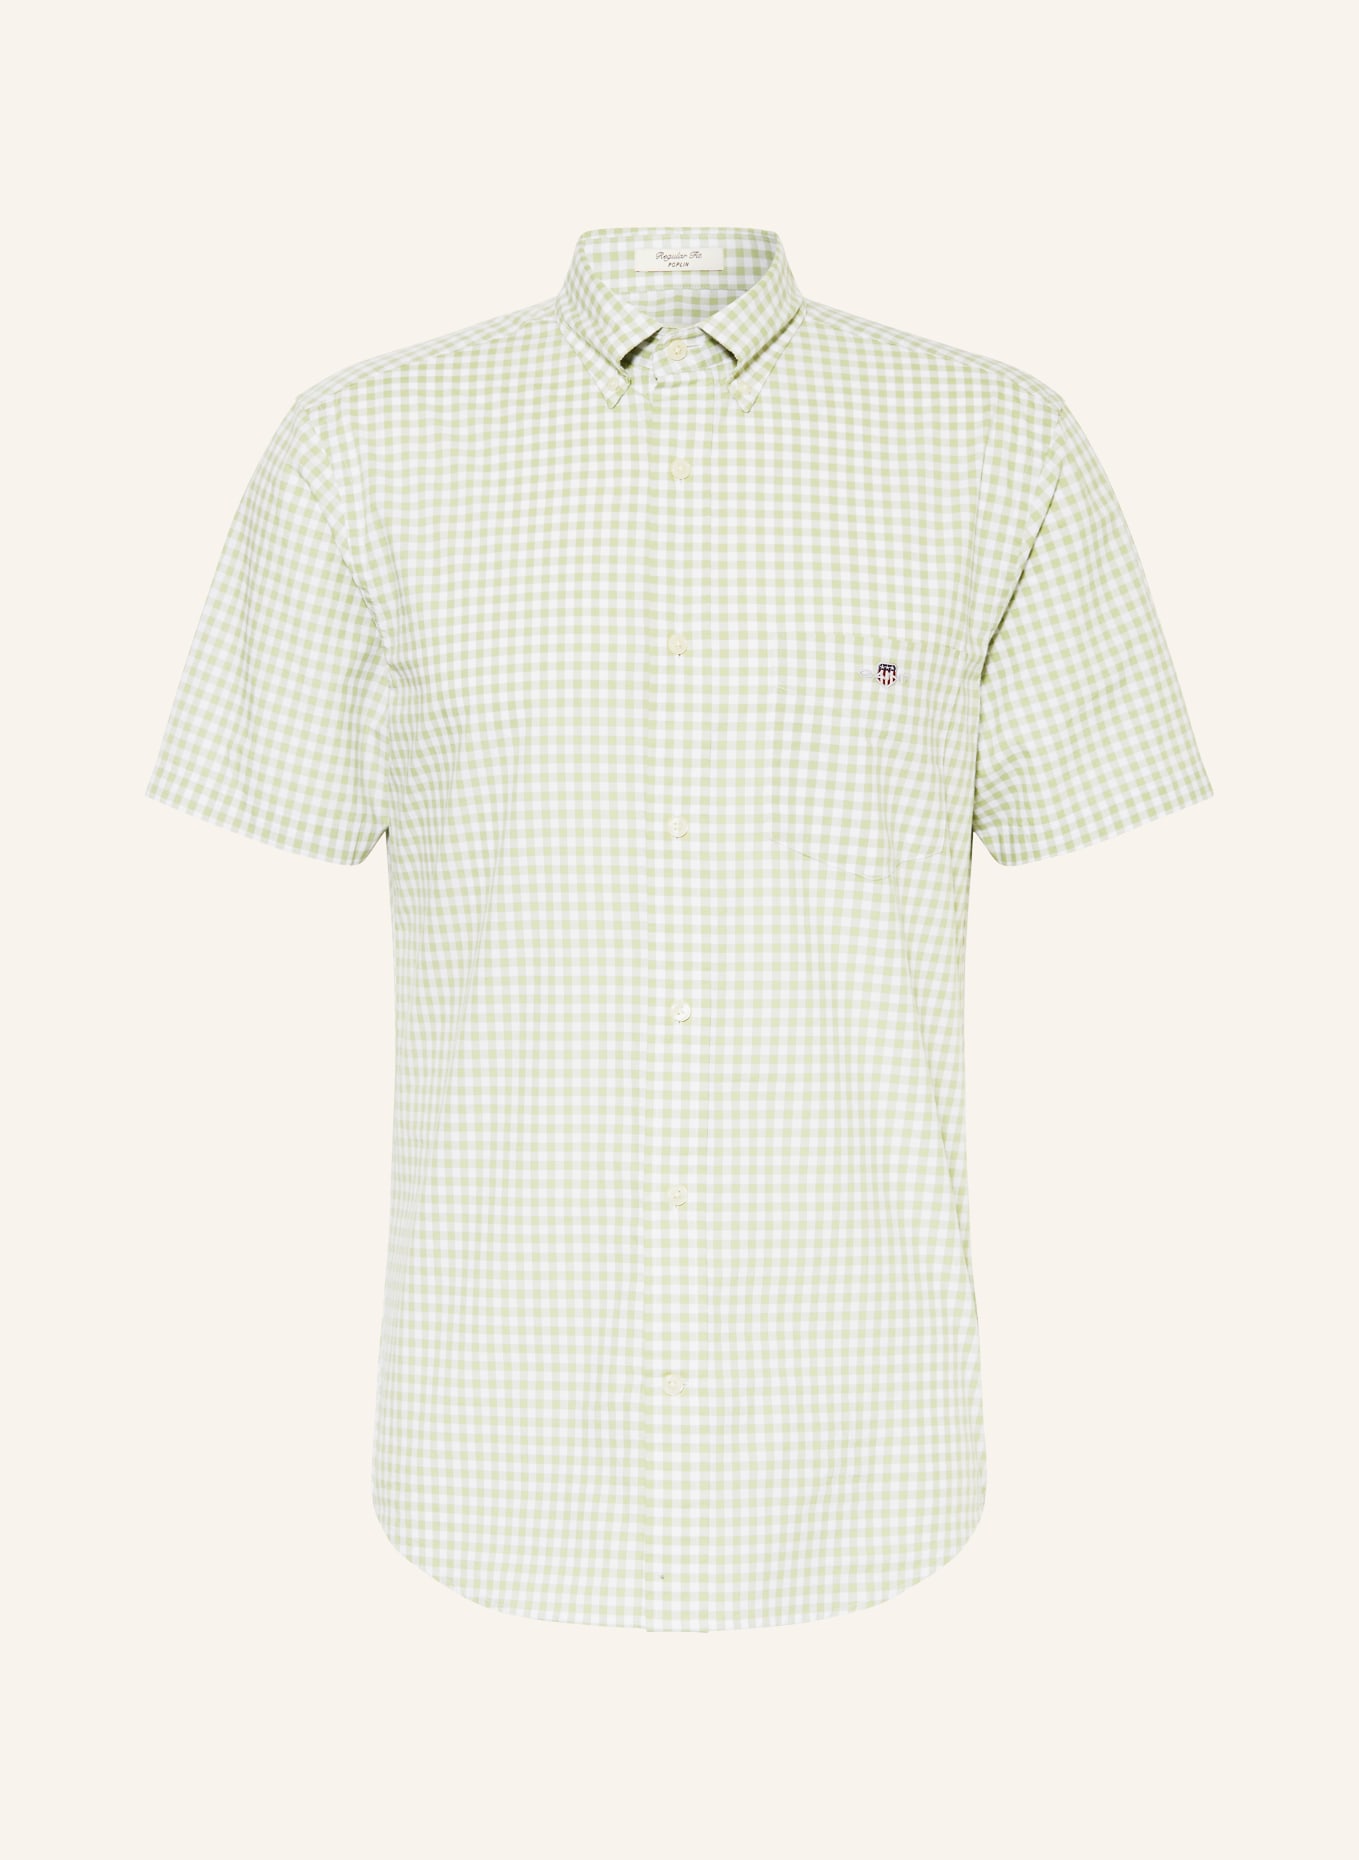 GANT Short sleeve shirt regular fit, Color: LIGHT GREEN/ WHITE (Image 1)